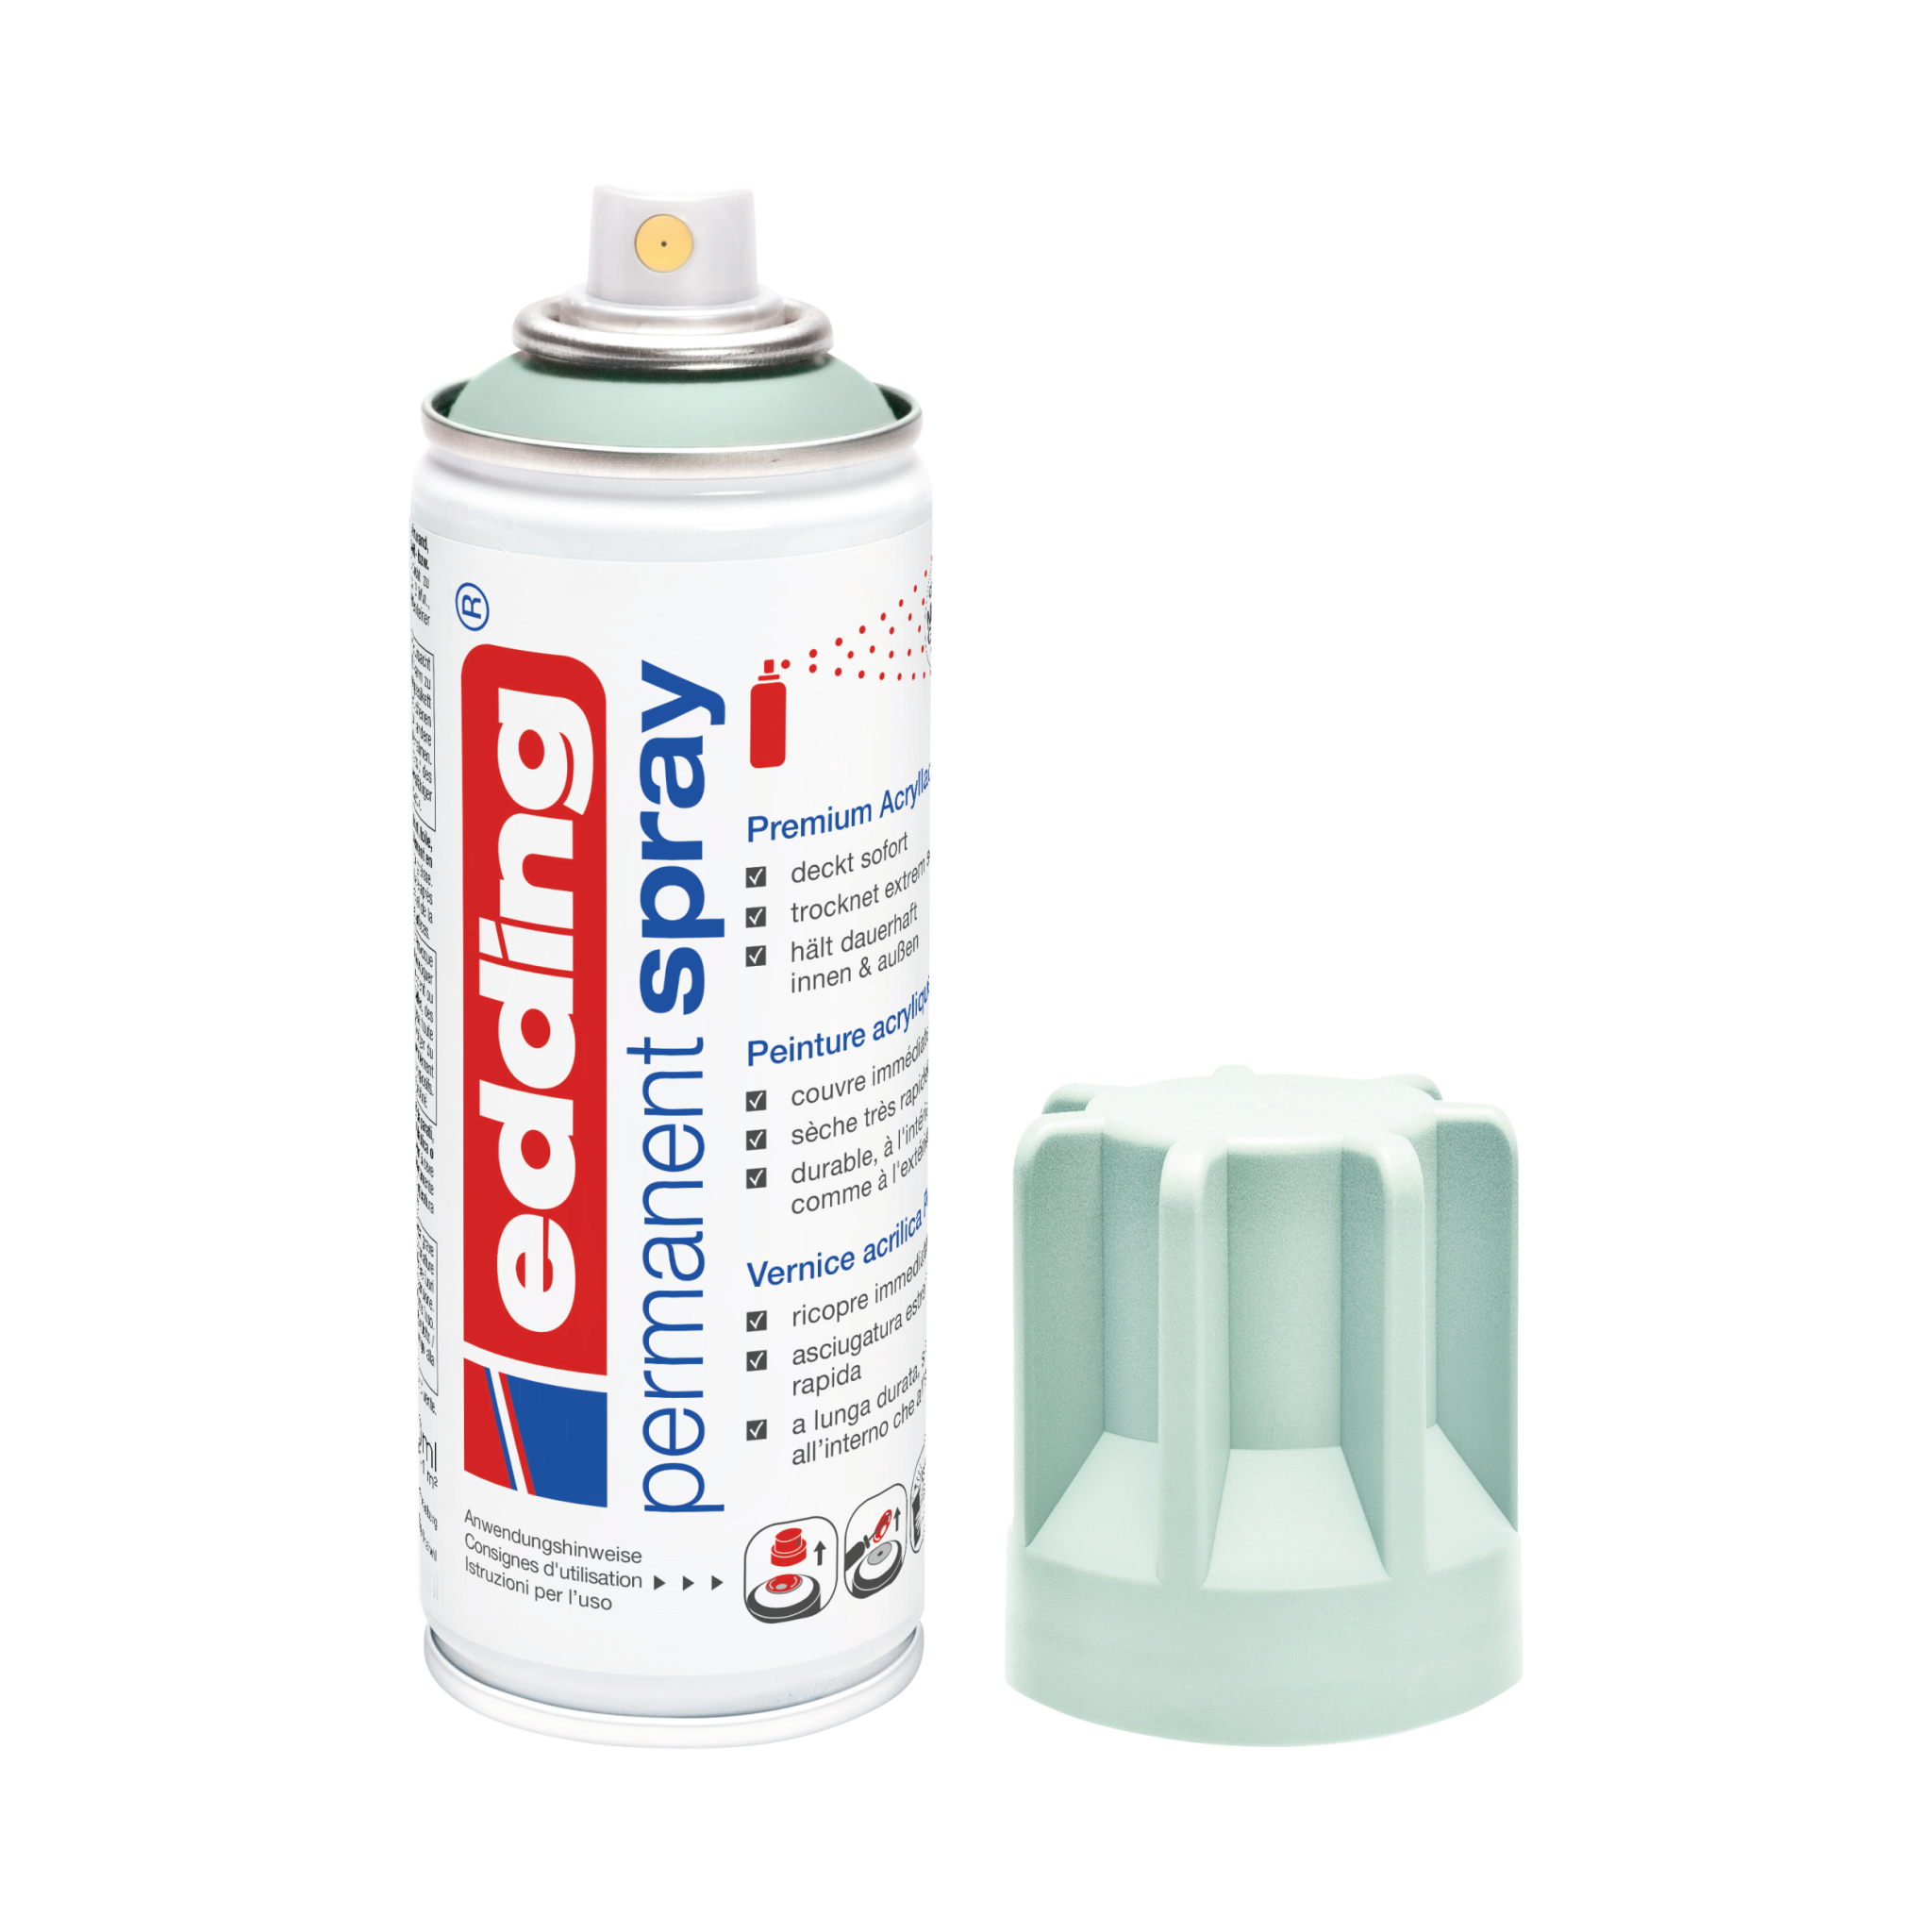 Eine Dose Edding 5200 Permanentspray Acryllack Pastell & sanfte Farben in Weiß, deren Deckel abgenommen und daneben platziert wurde.